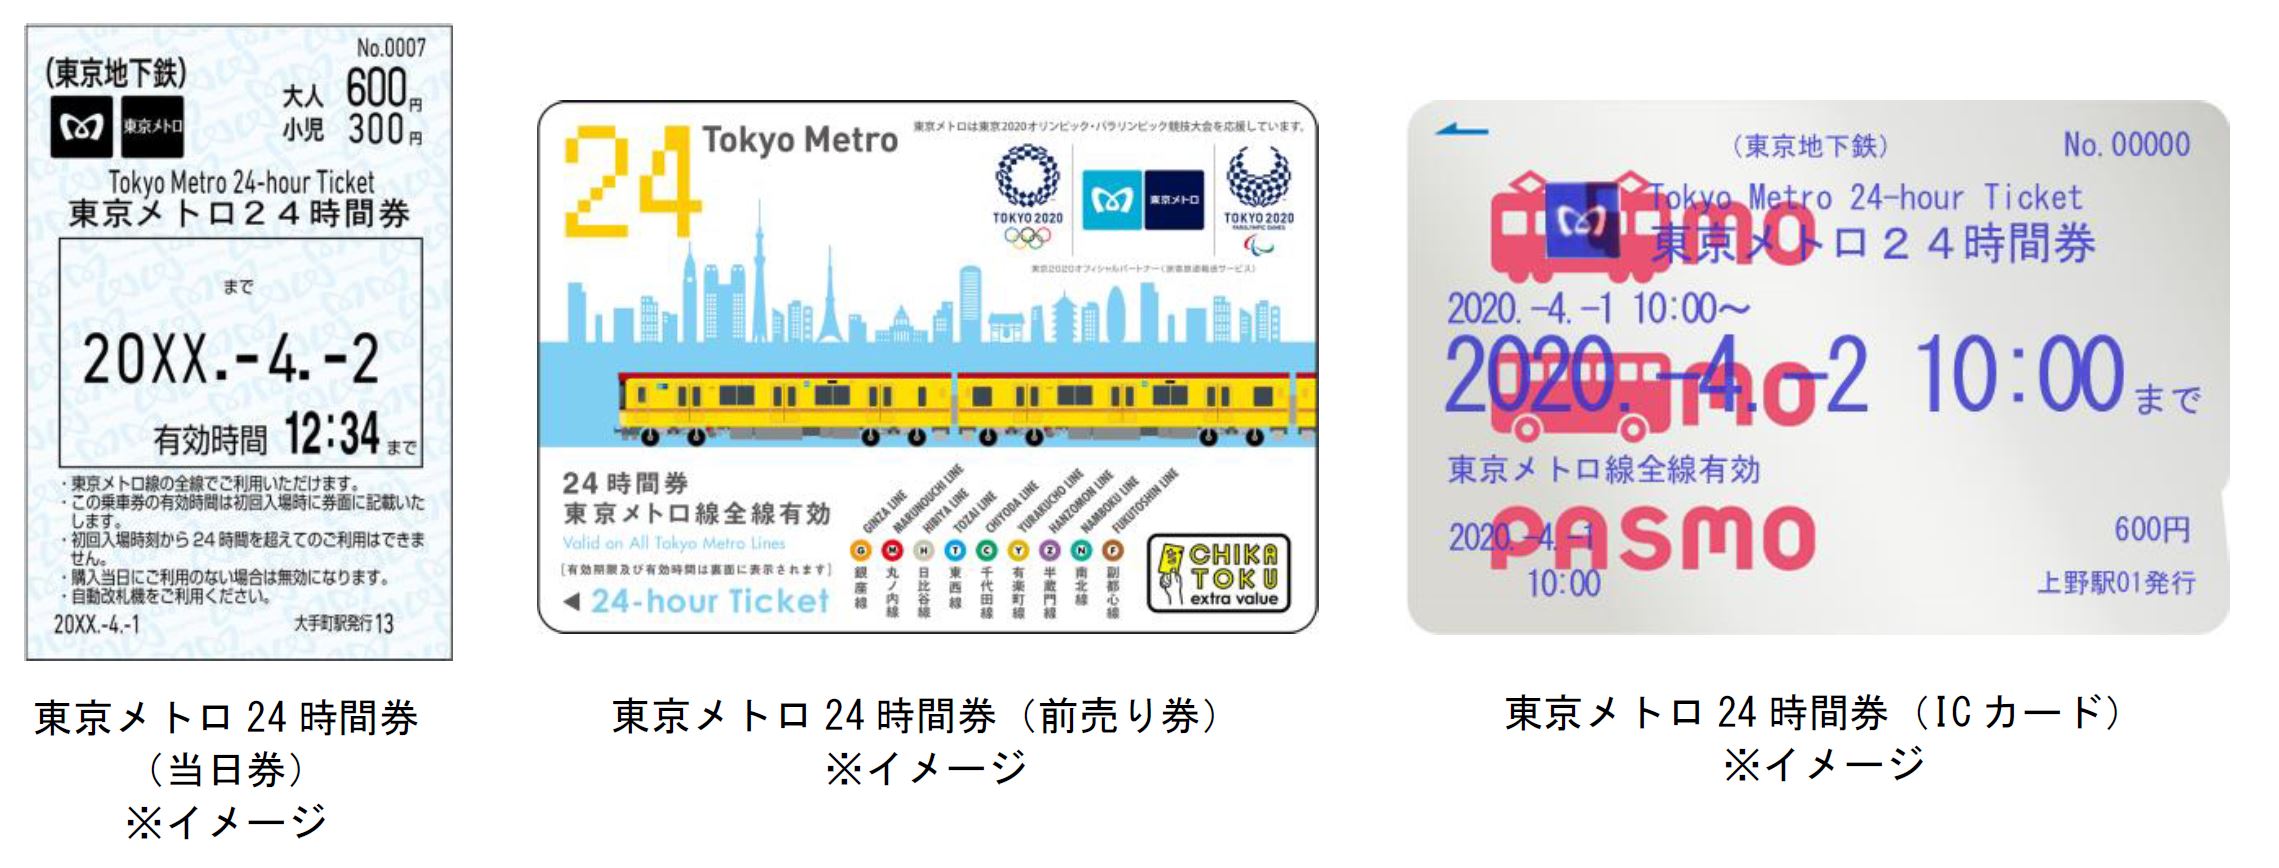 東京メトロ24時間券等の企画乗車券をクレジットカードで購入できるようになります 東京メトロのプレスリリース